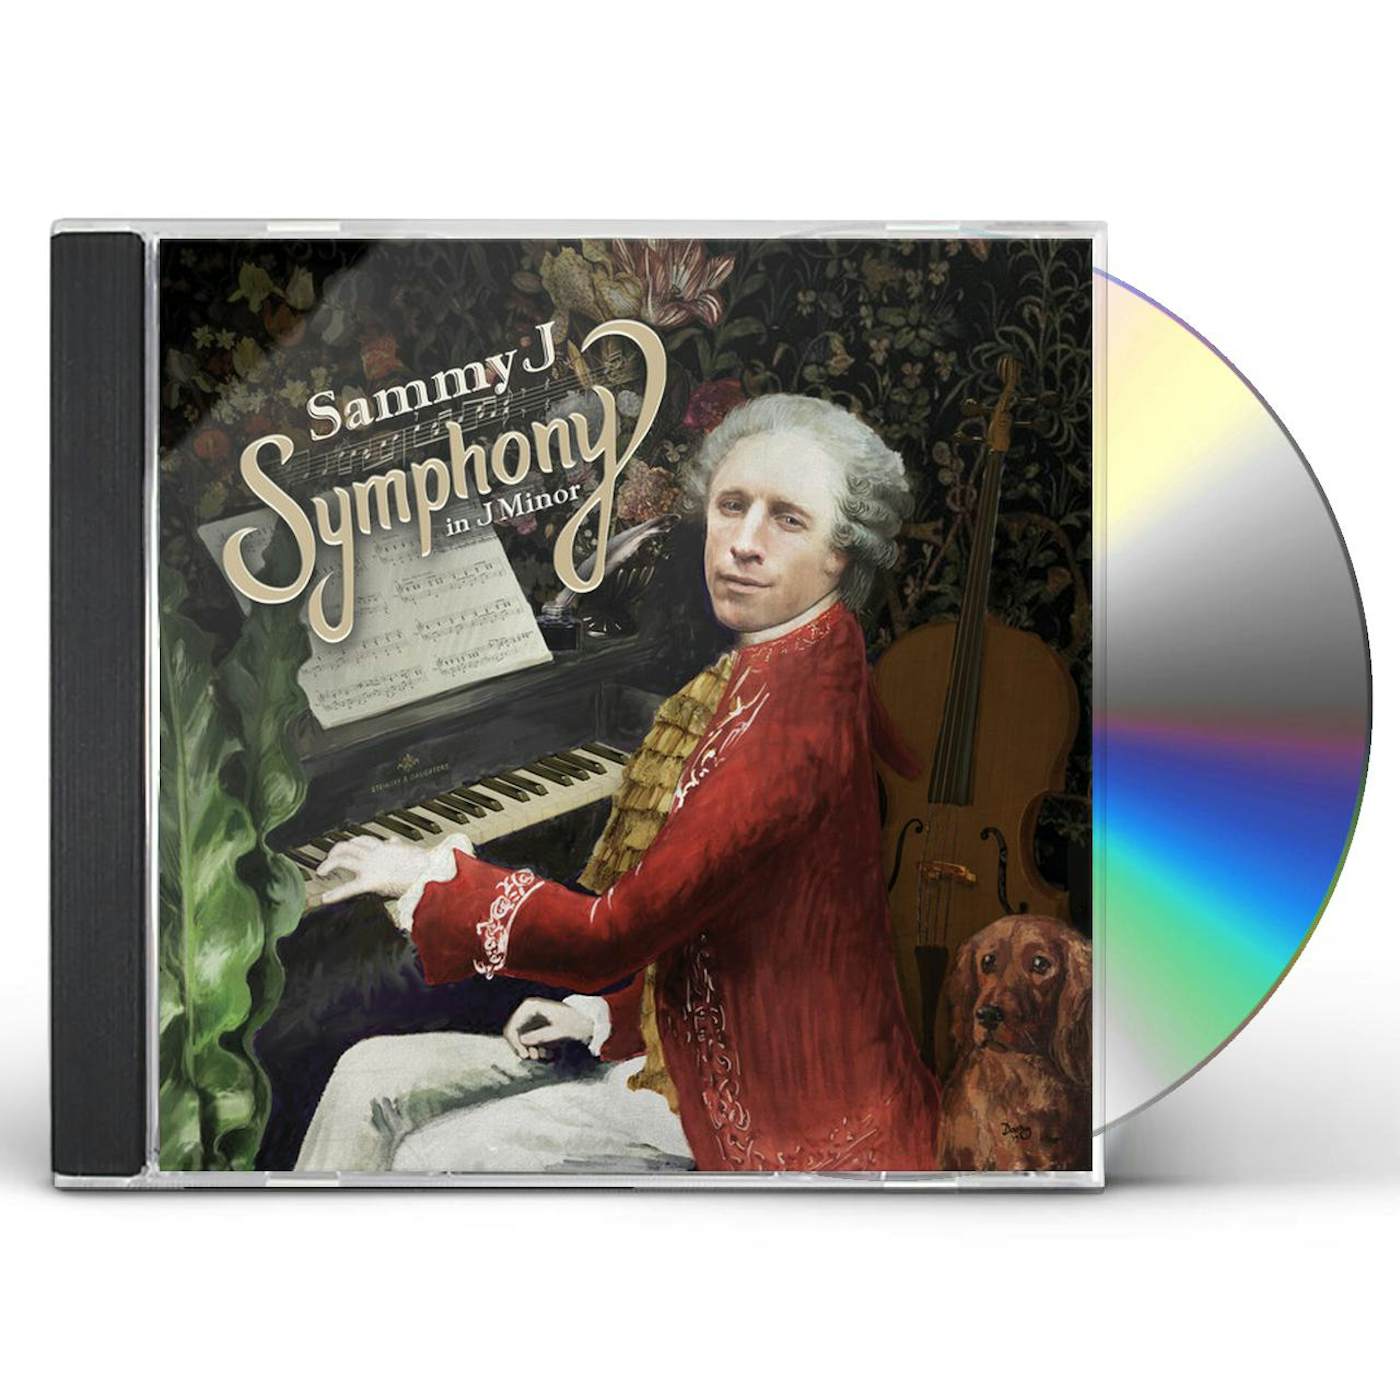 Sammy Johnson SYMPHONY IN J MINOR CD